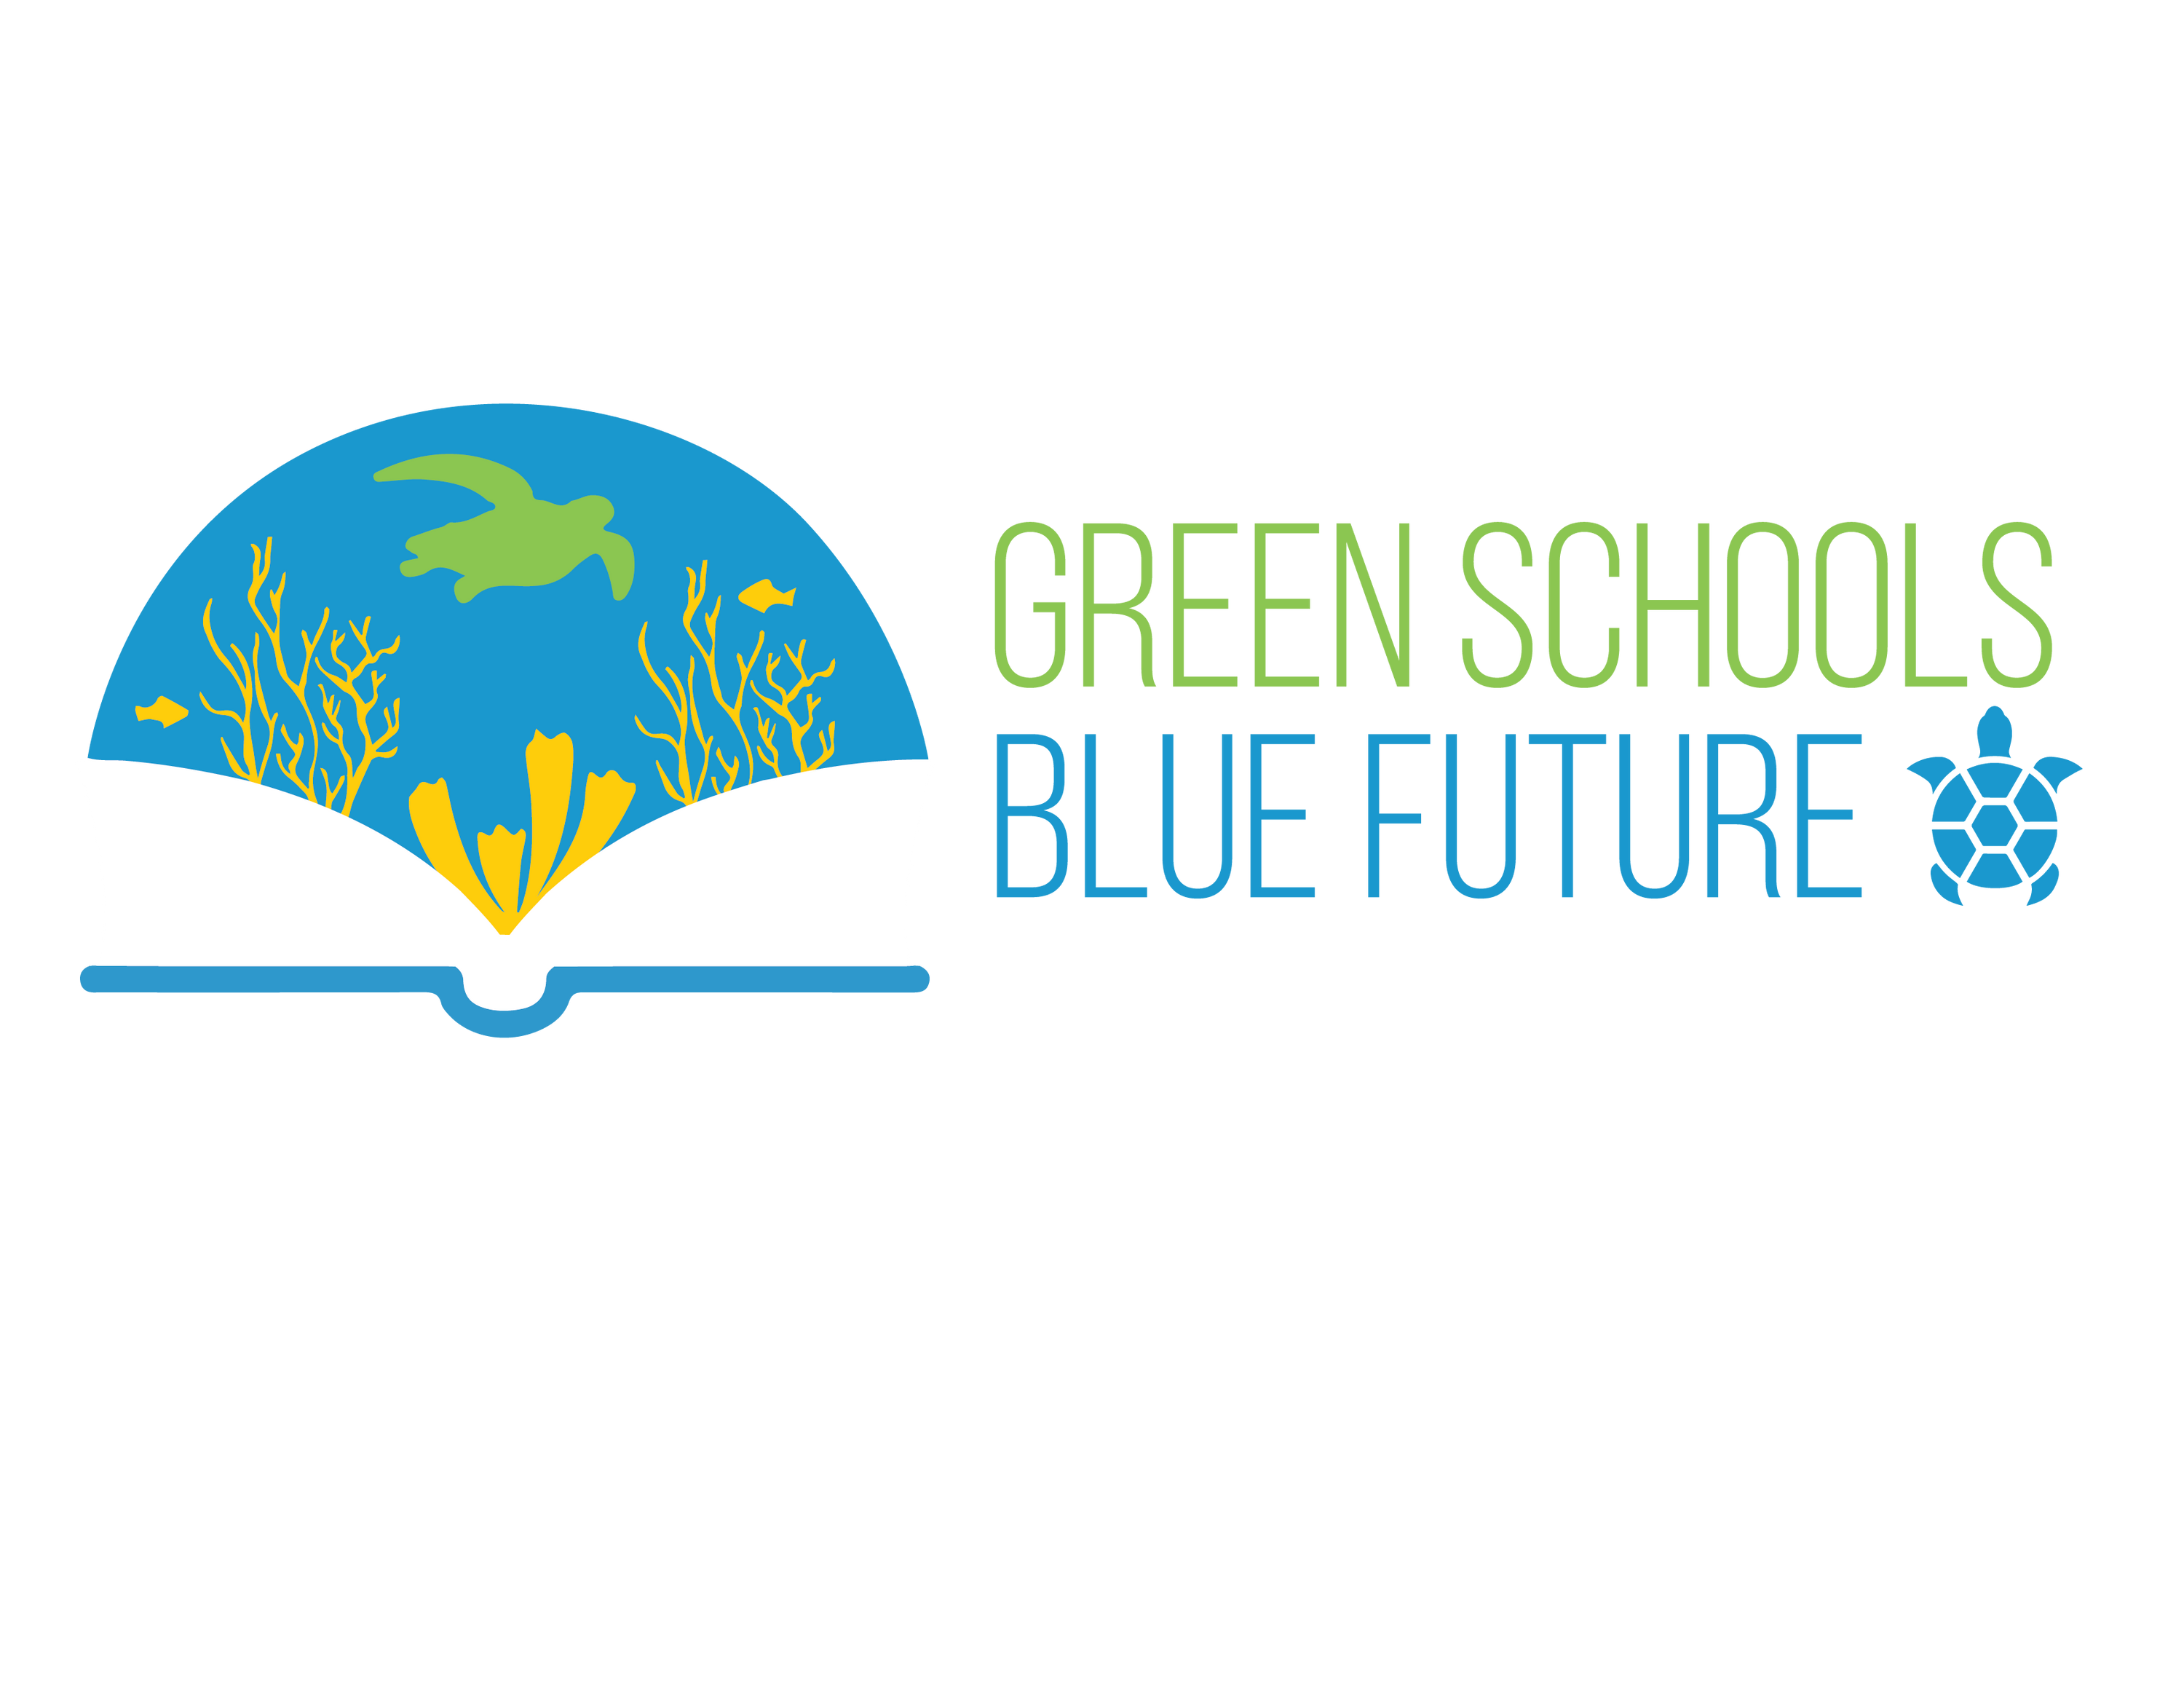 Green schools blue future